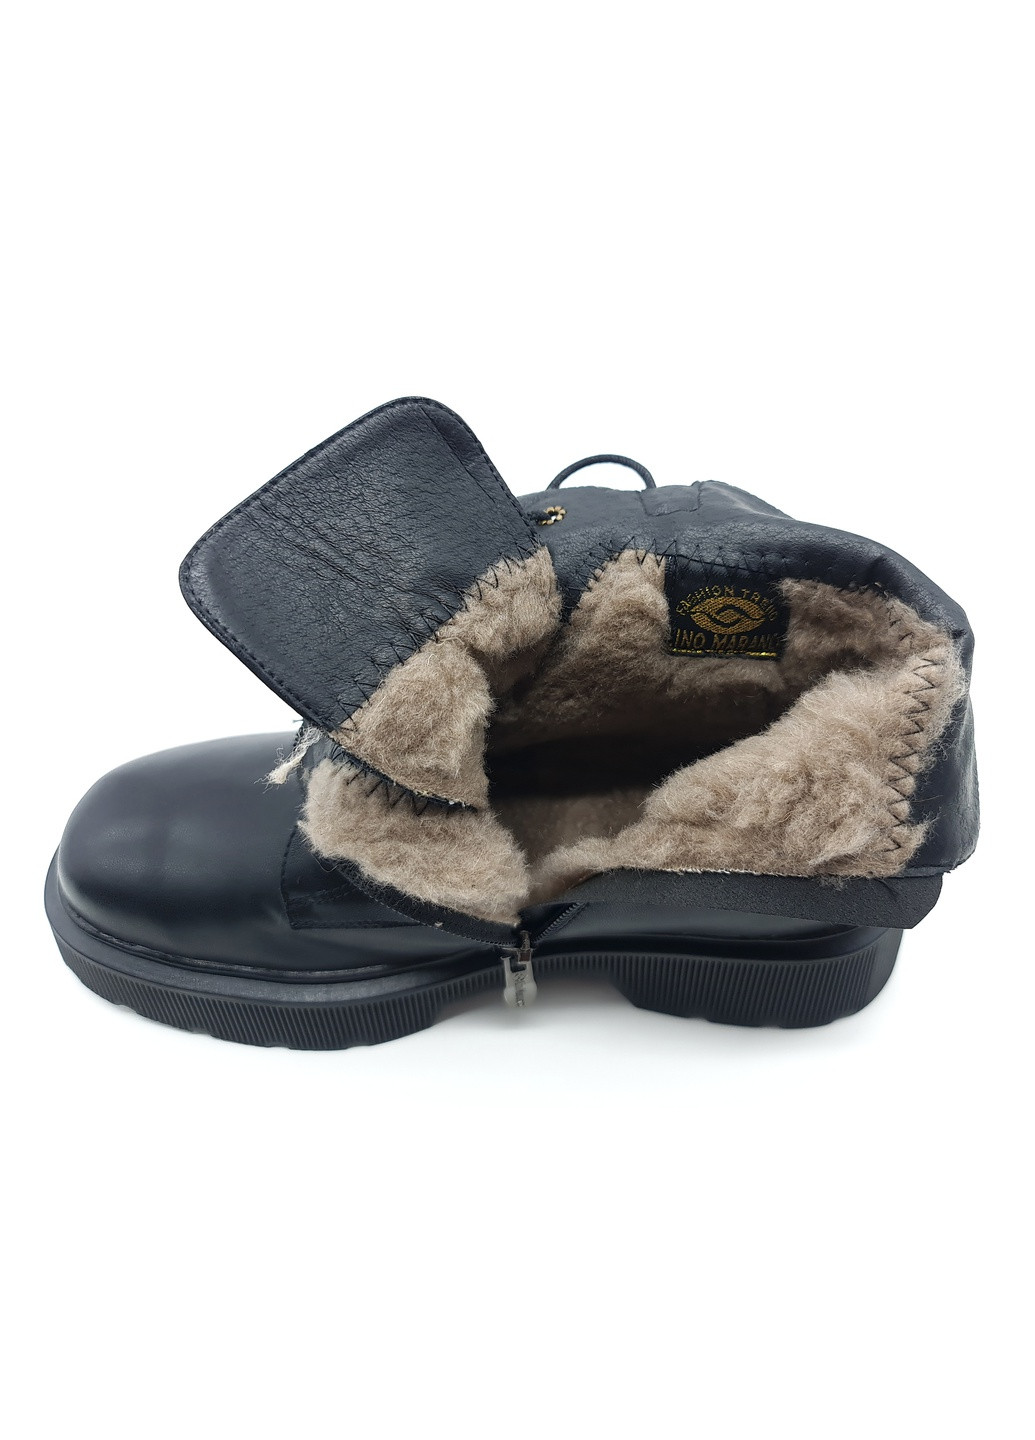 Осенние женские ботинки зимние черные кожаные lm-19-2 235 мм(р) Lino Marano